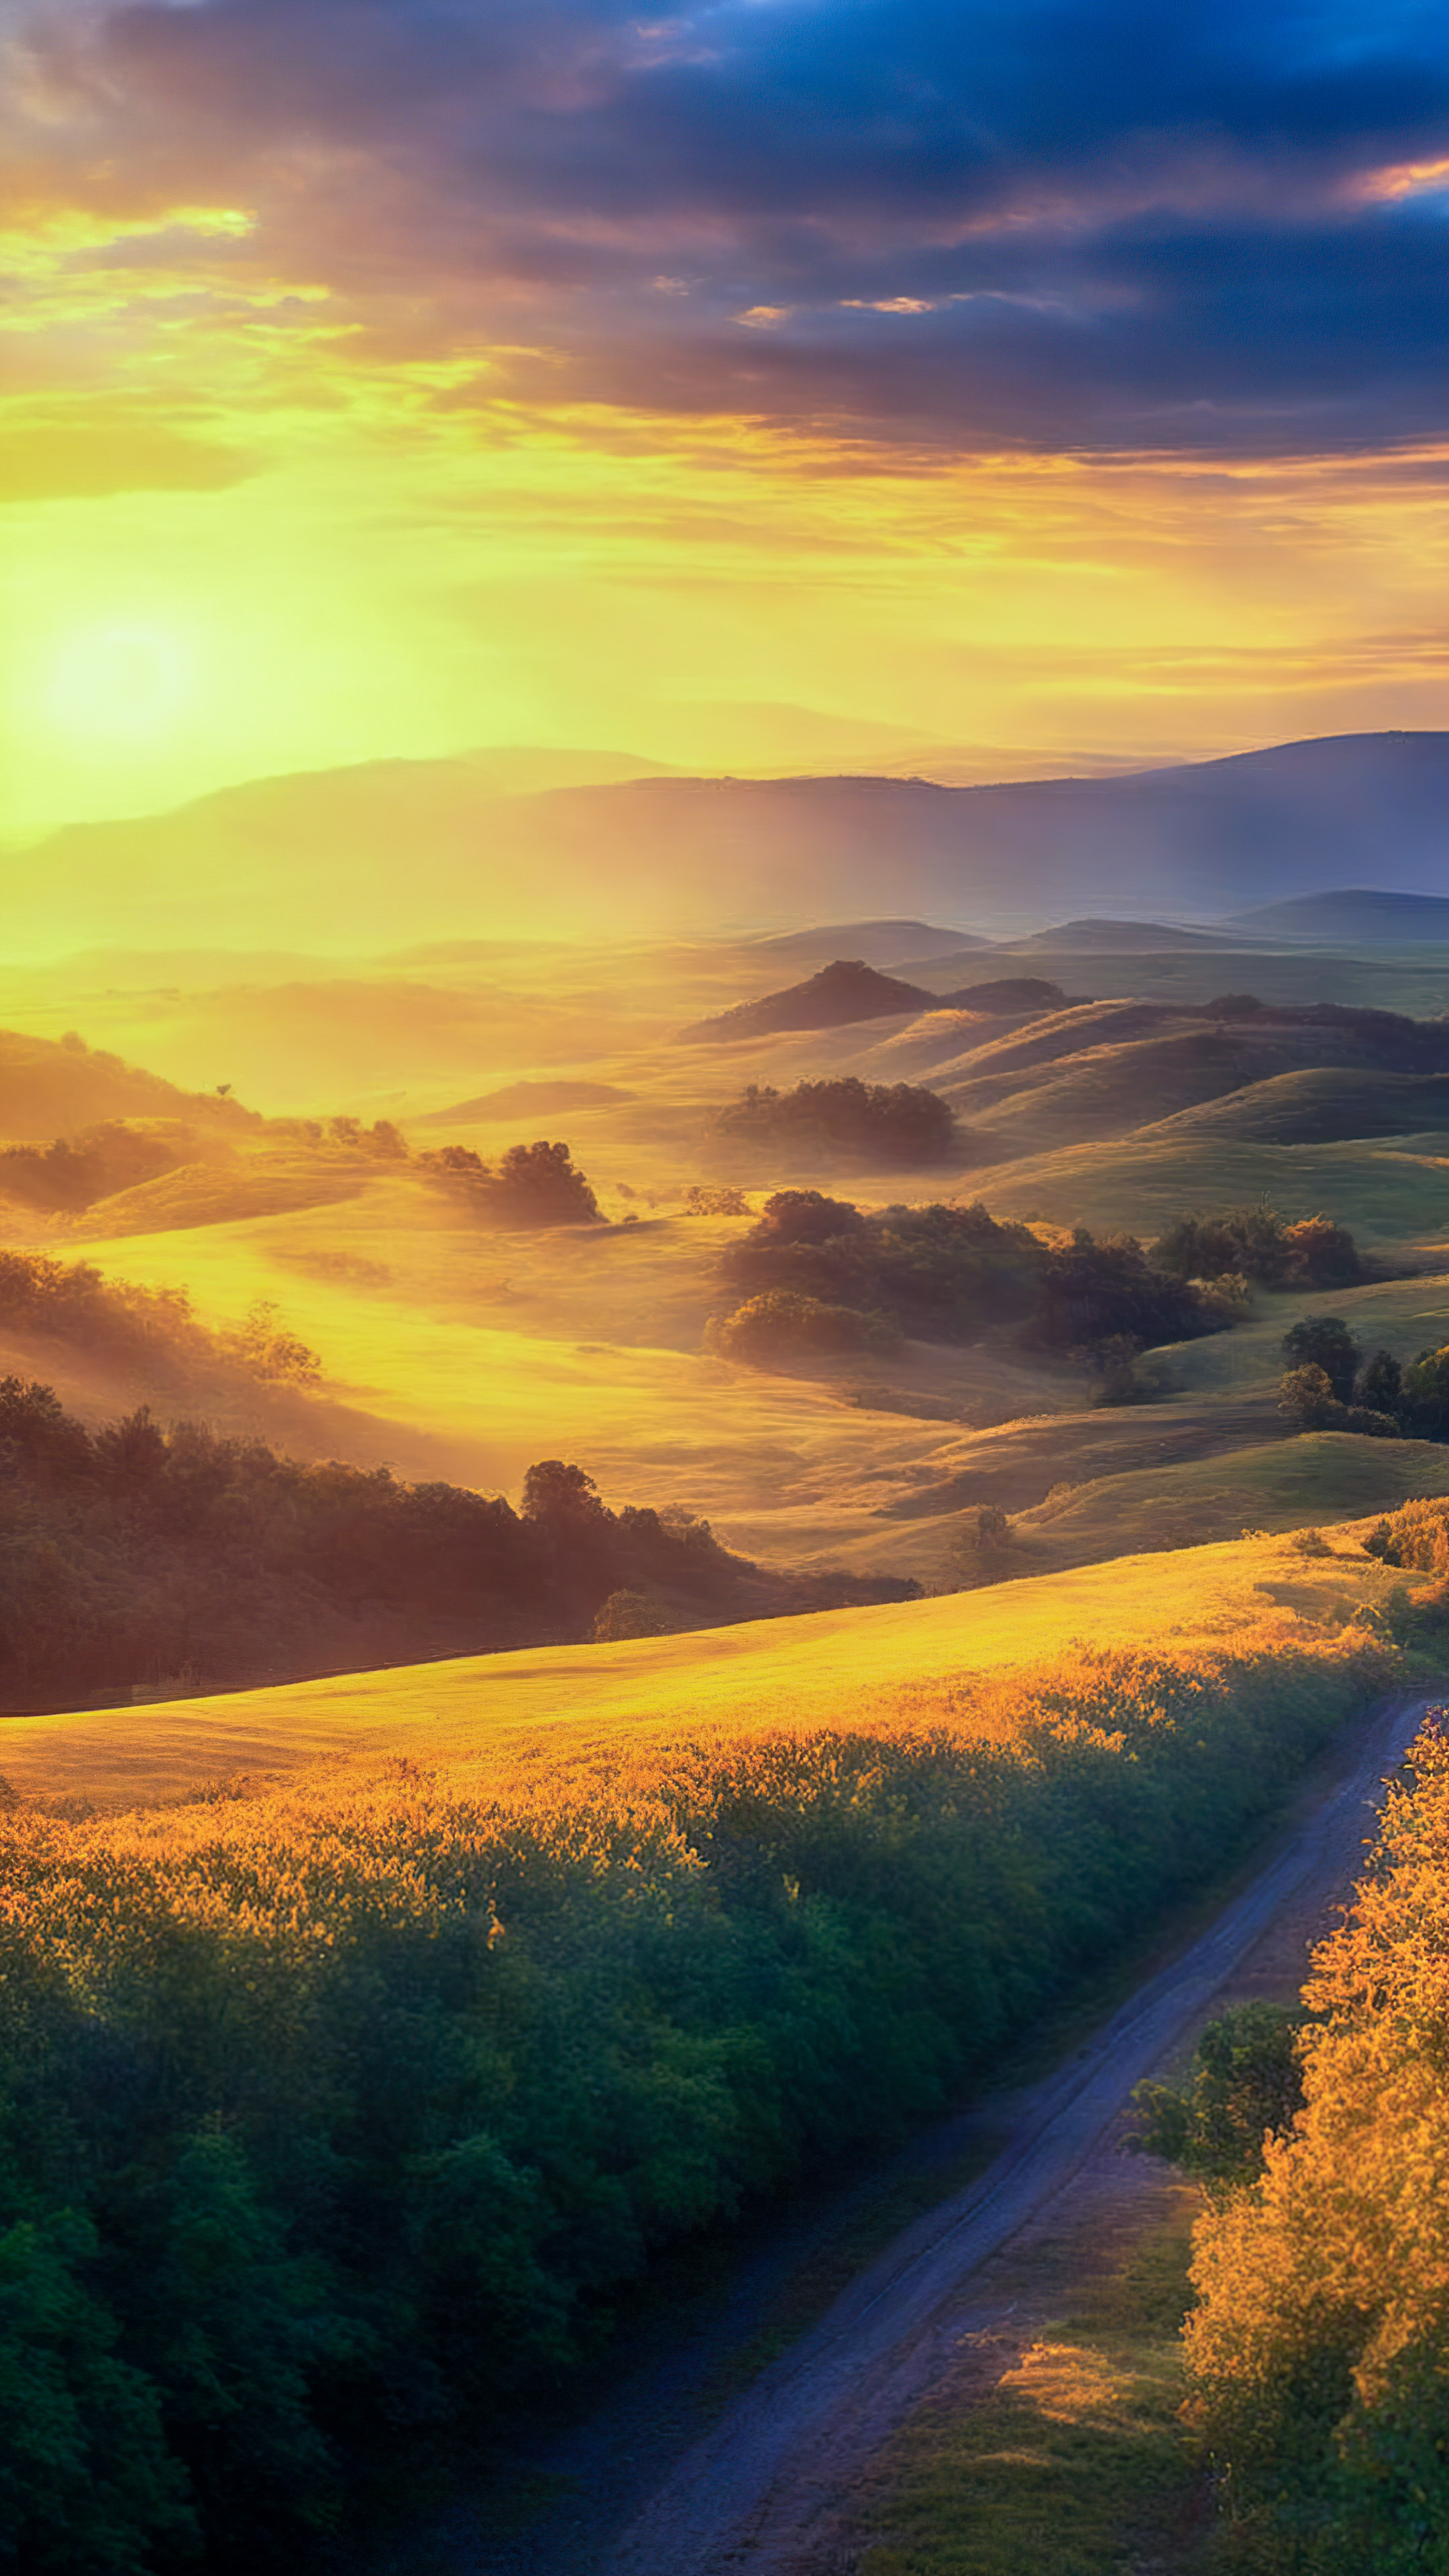 Capturez l'éclat du ciel avec notre arrière-plan, présentant un lever de soleil à couper le souffle sur une campagne tranquille, avec des collines ondulantes et une lueur dorée et chaleureuse.